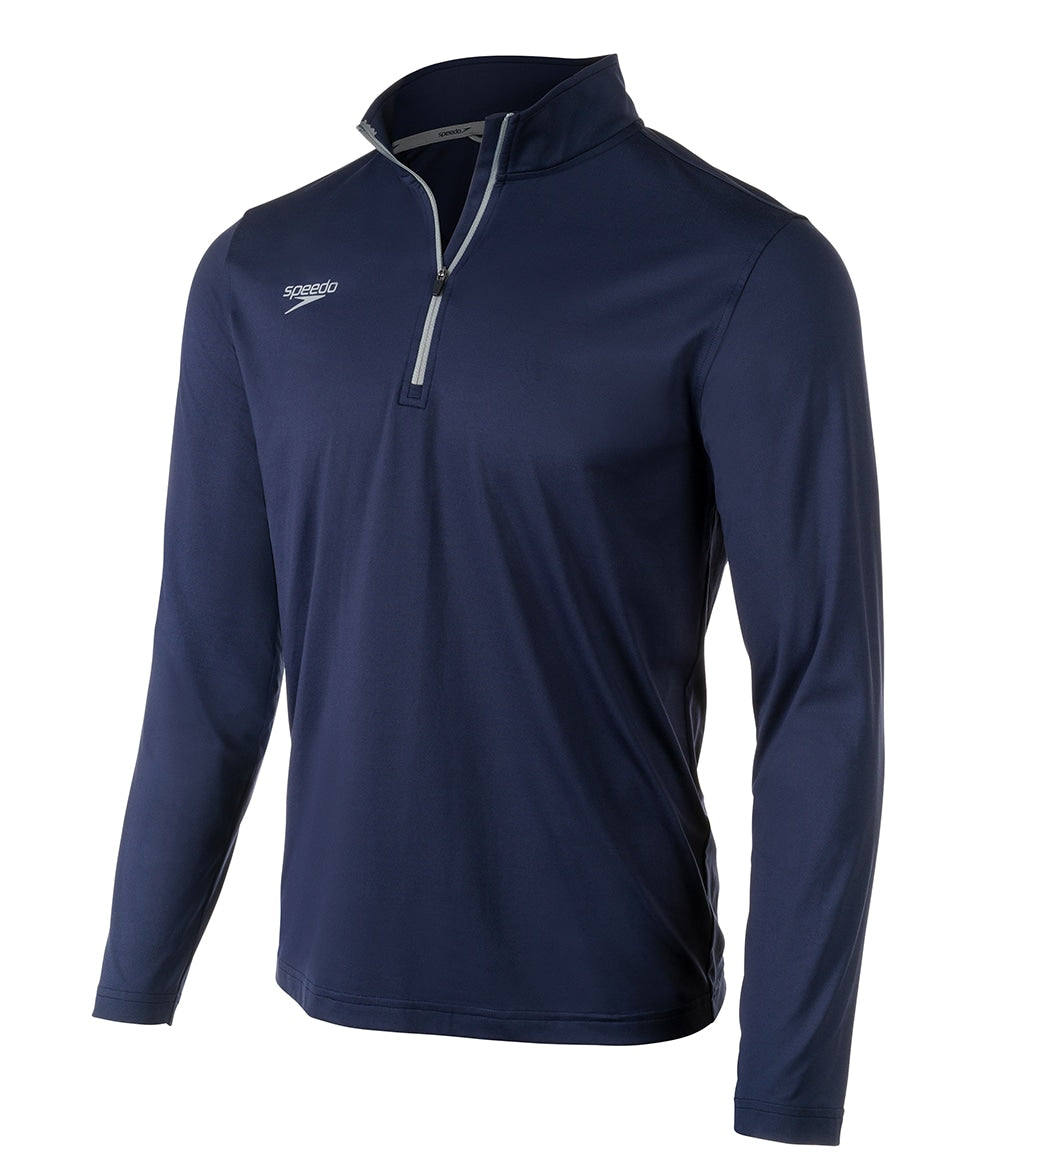 Speedo Unisex 1/4 Zip Solid Pullover Shirt